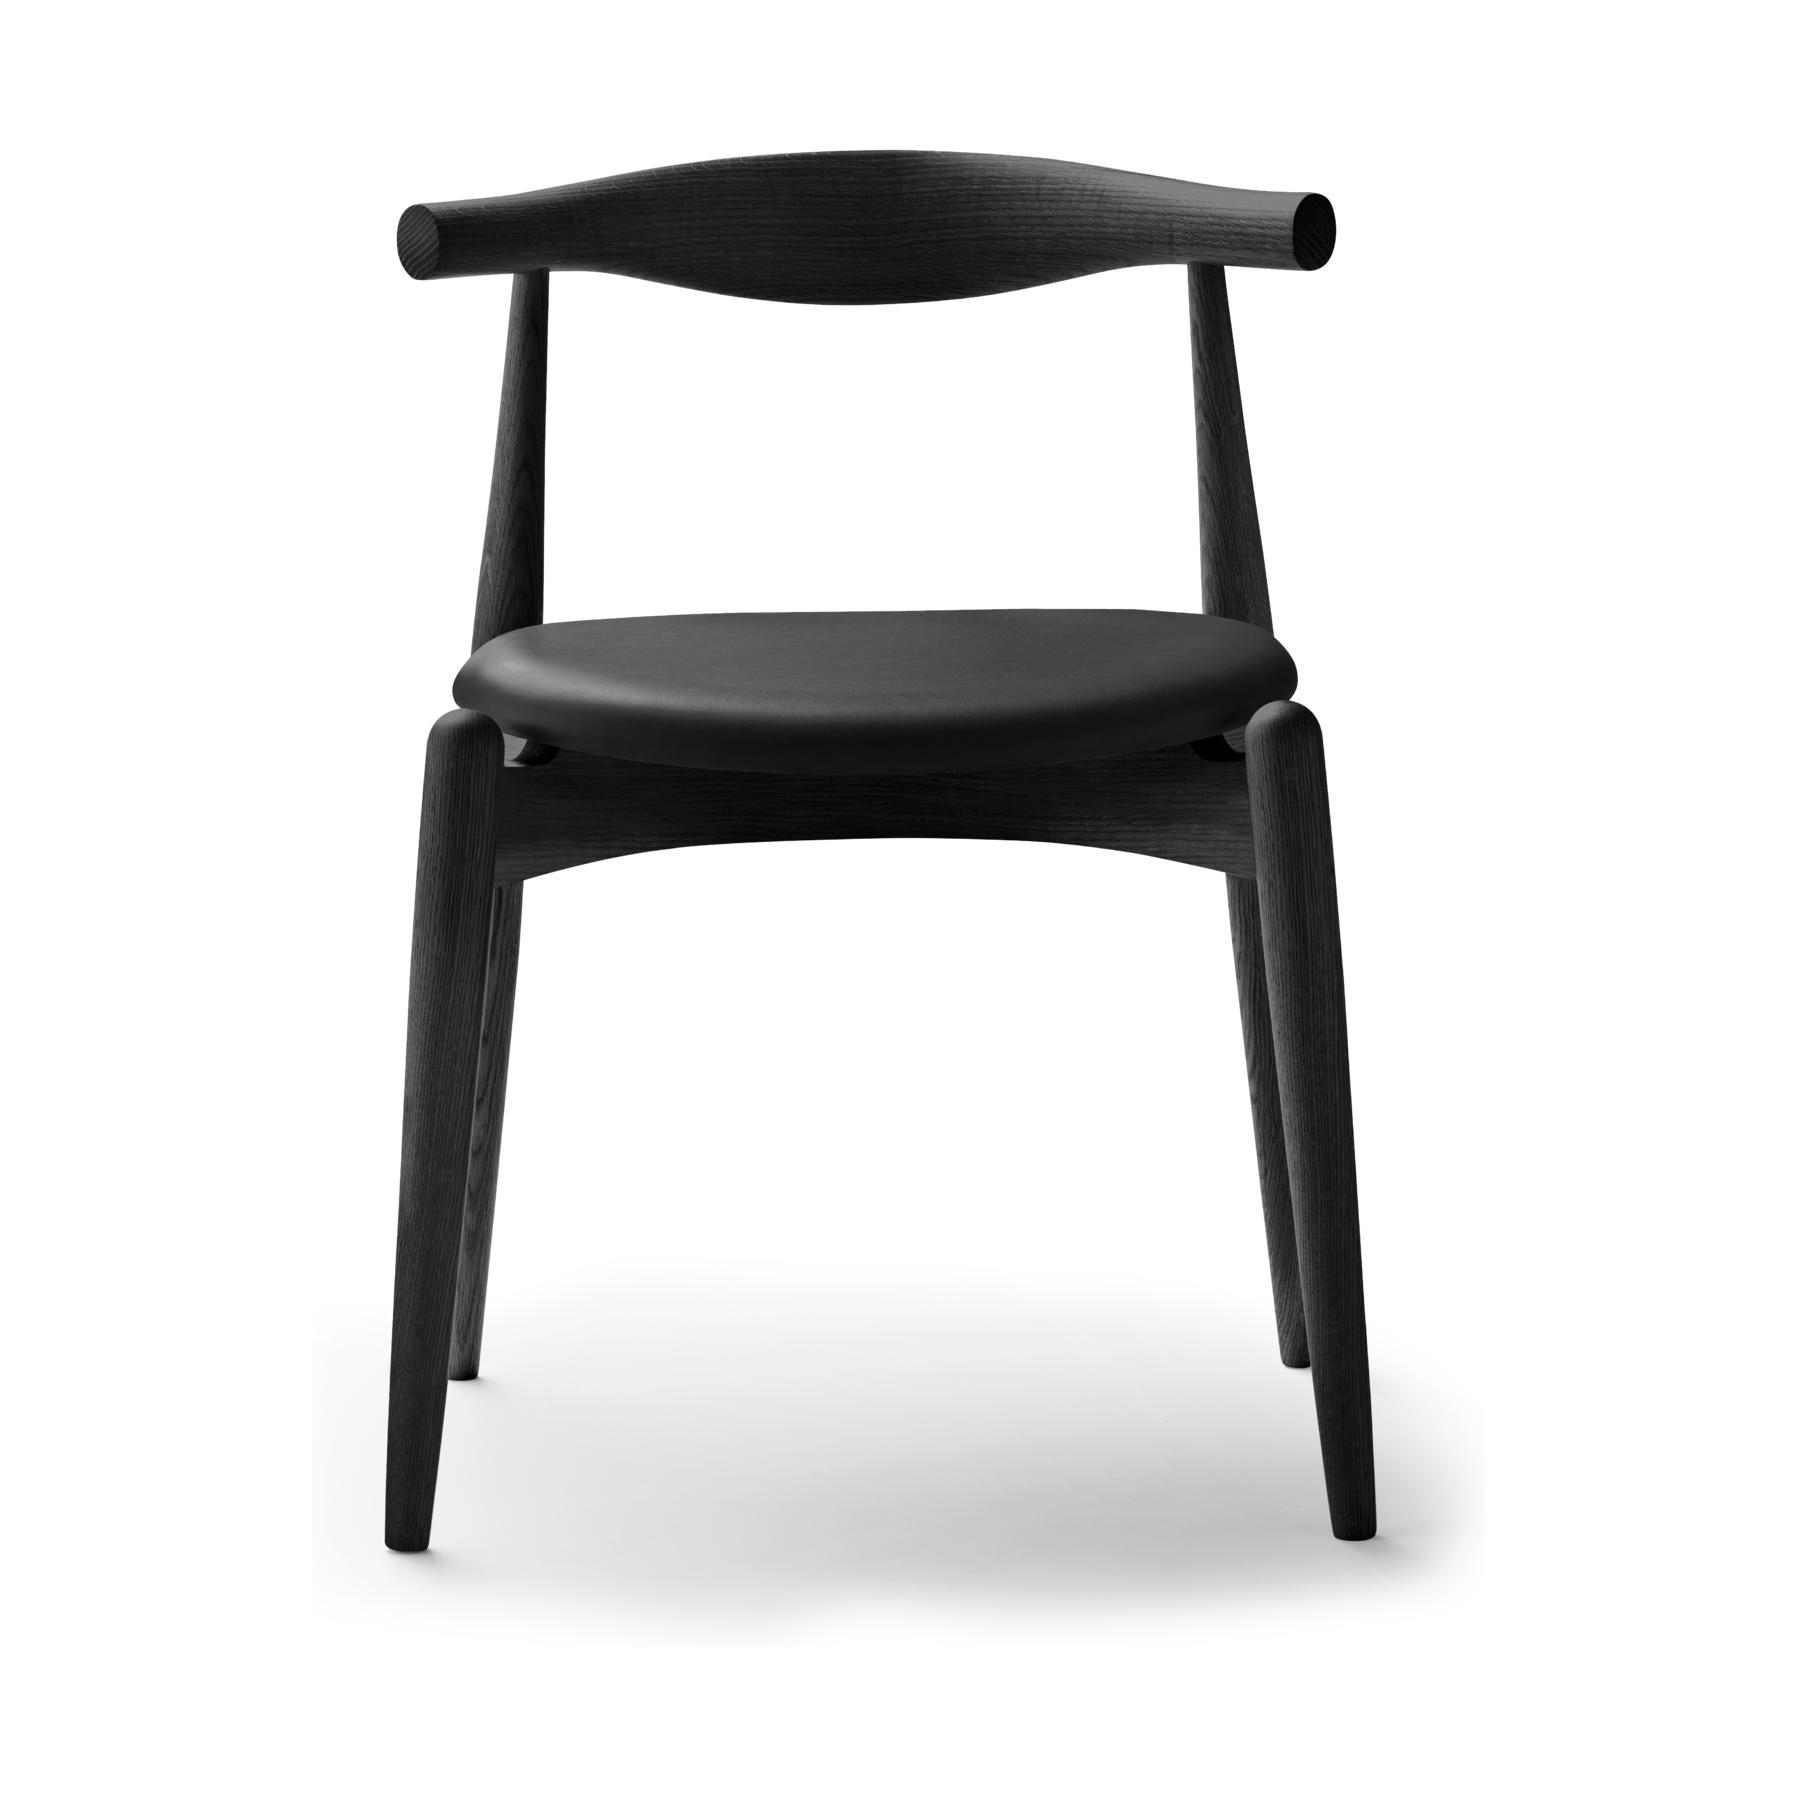 Carl Hansen CH20 Elbow Chair, Colored CHOK / Black Leather